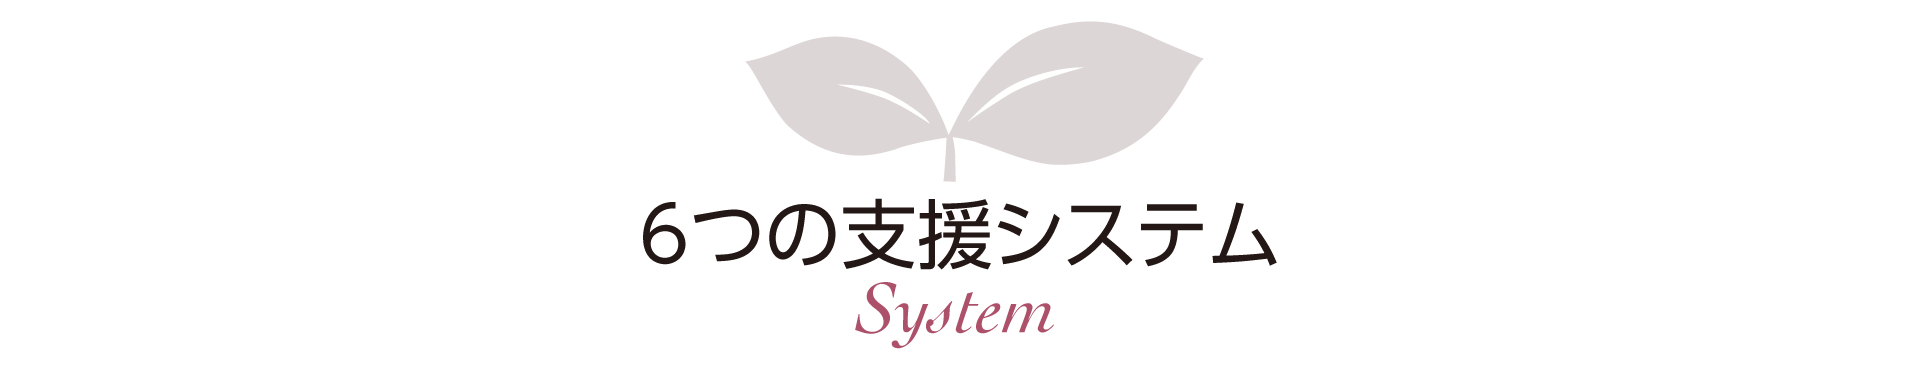 6つの支援システム